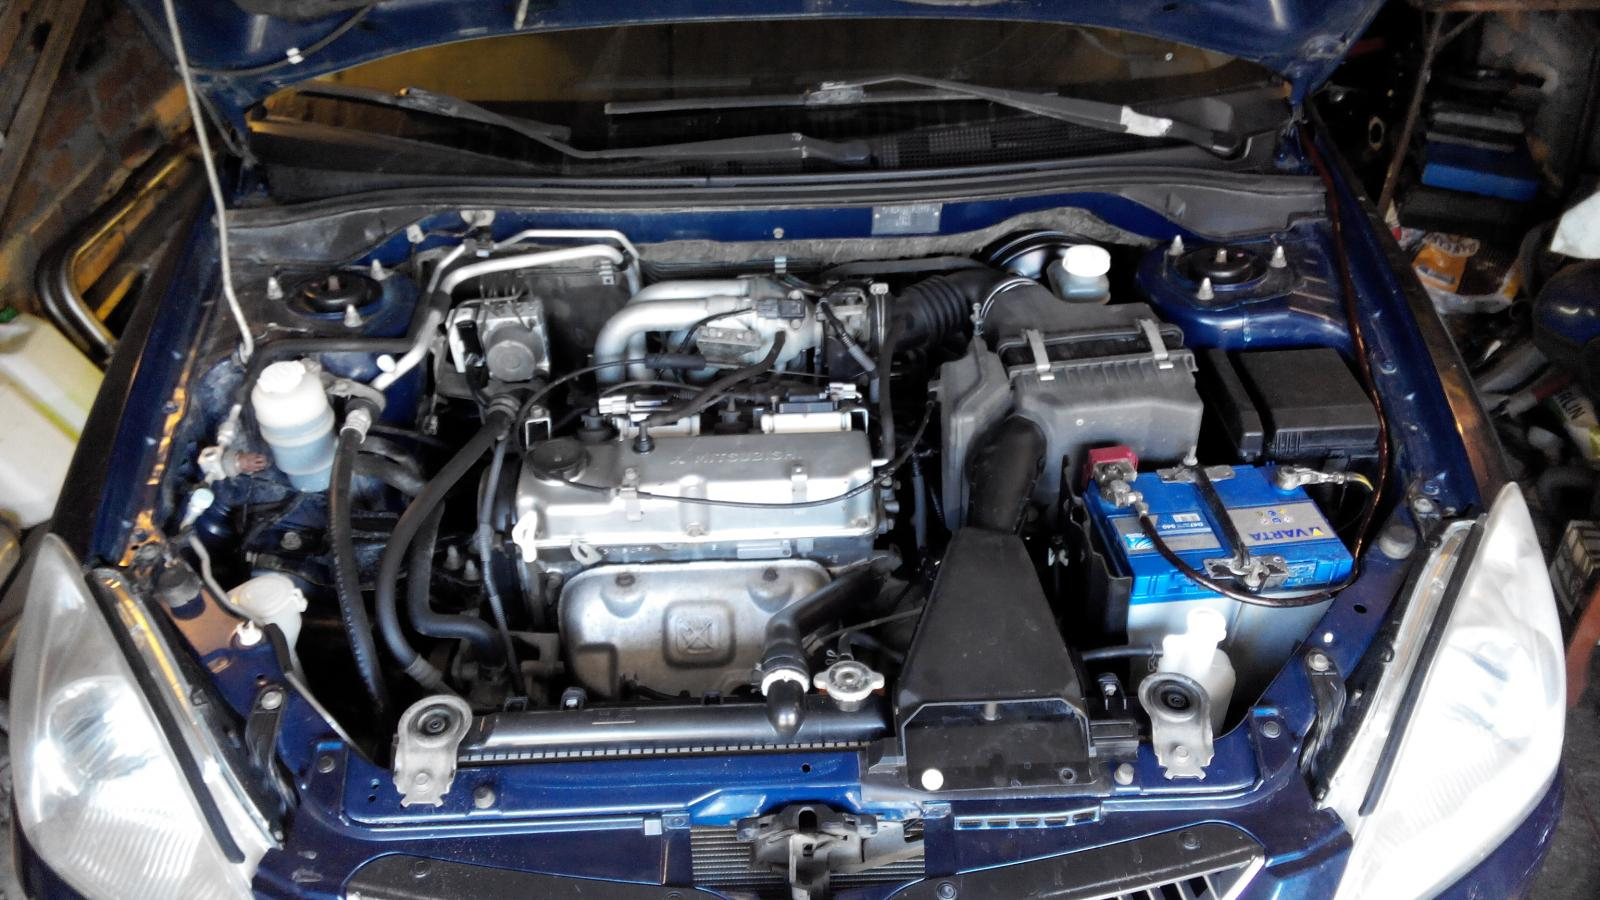 Lancer 9 1.6 двигатель. Двигатель Мицубиси Лансер 9 1.6. Двигатель Митсубиси Лансер 9 1.6. Mitsubishi Lancer 9 мотор. Лансер 1.6 двигатель.